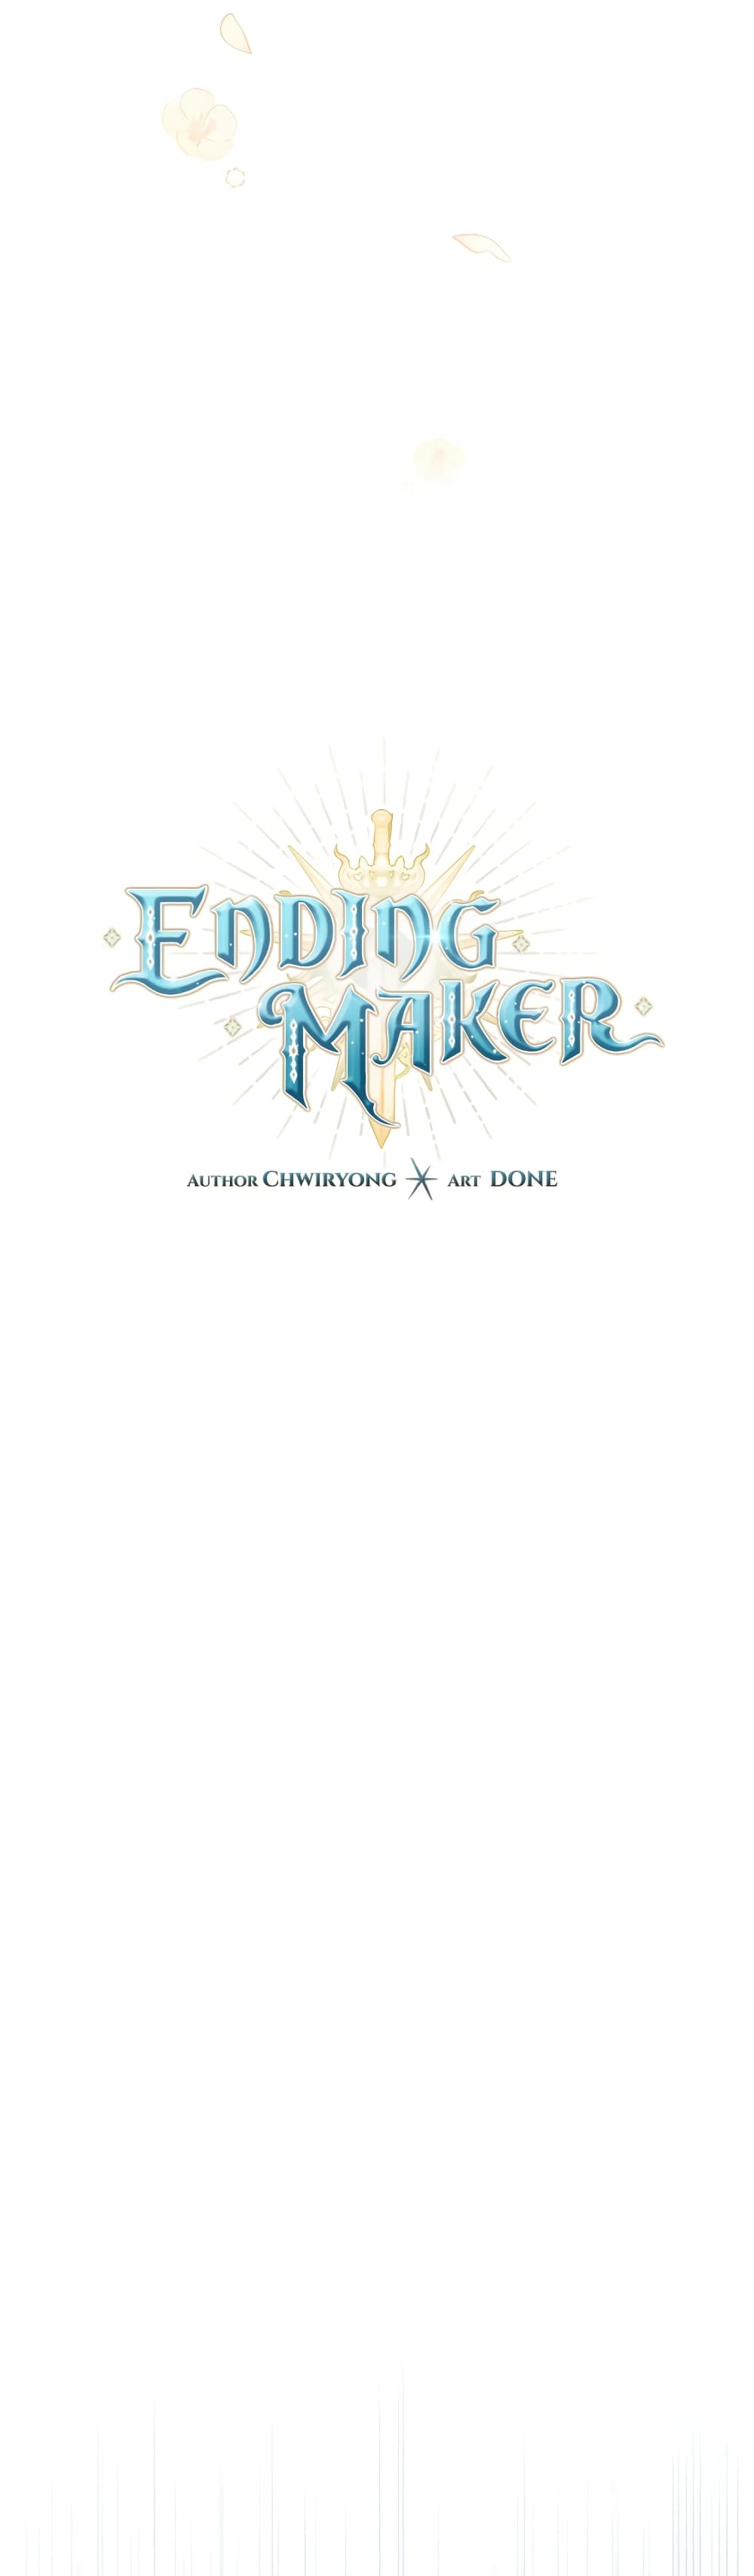 Ending Maker 21 11